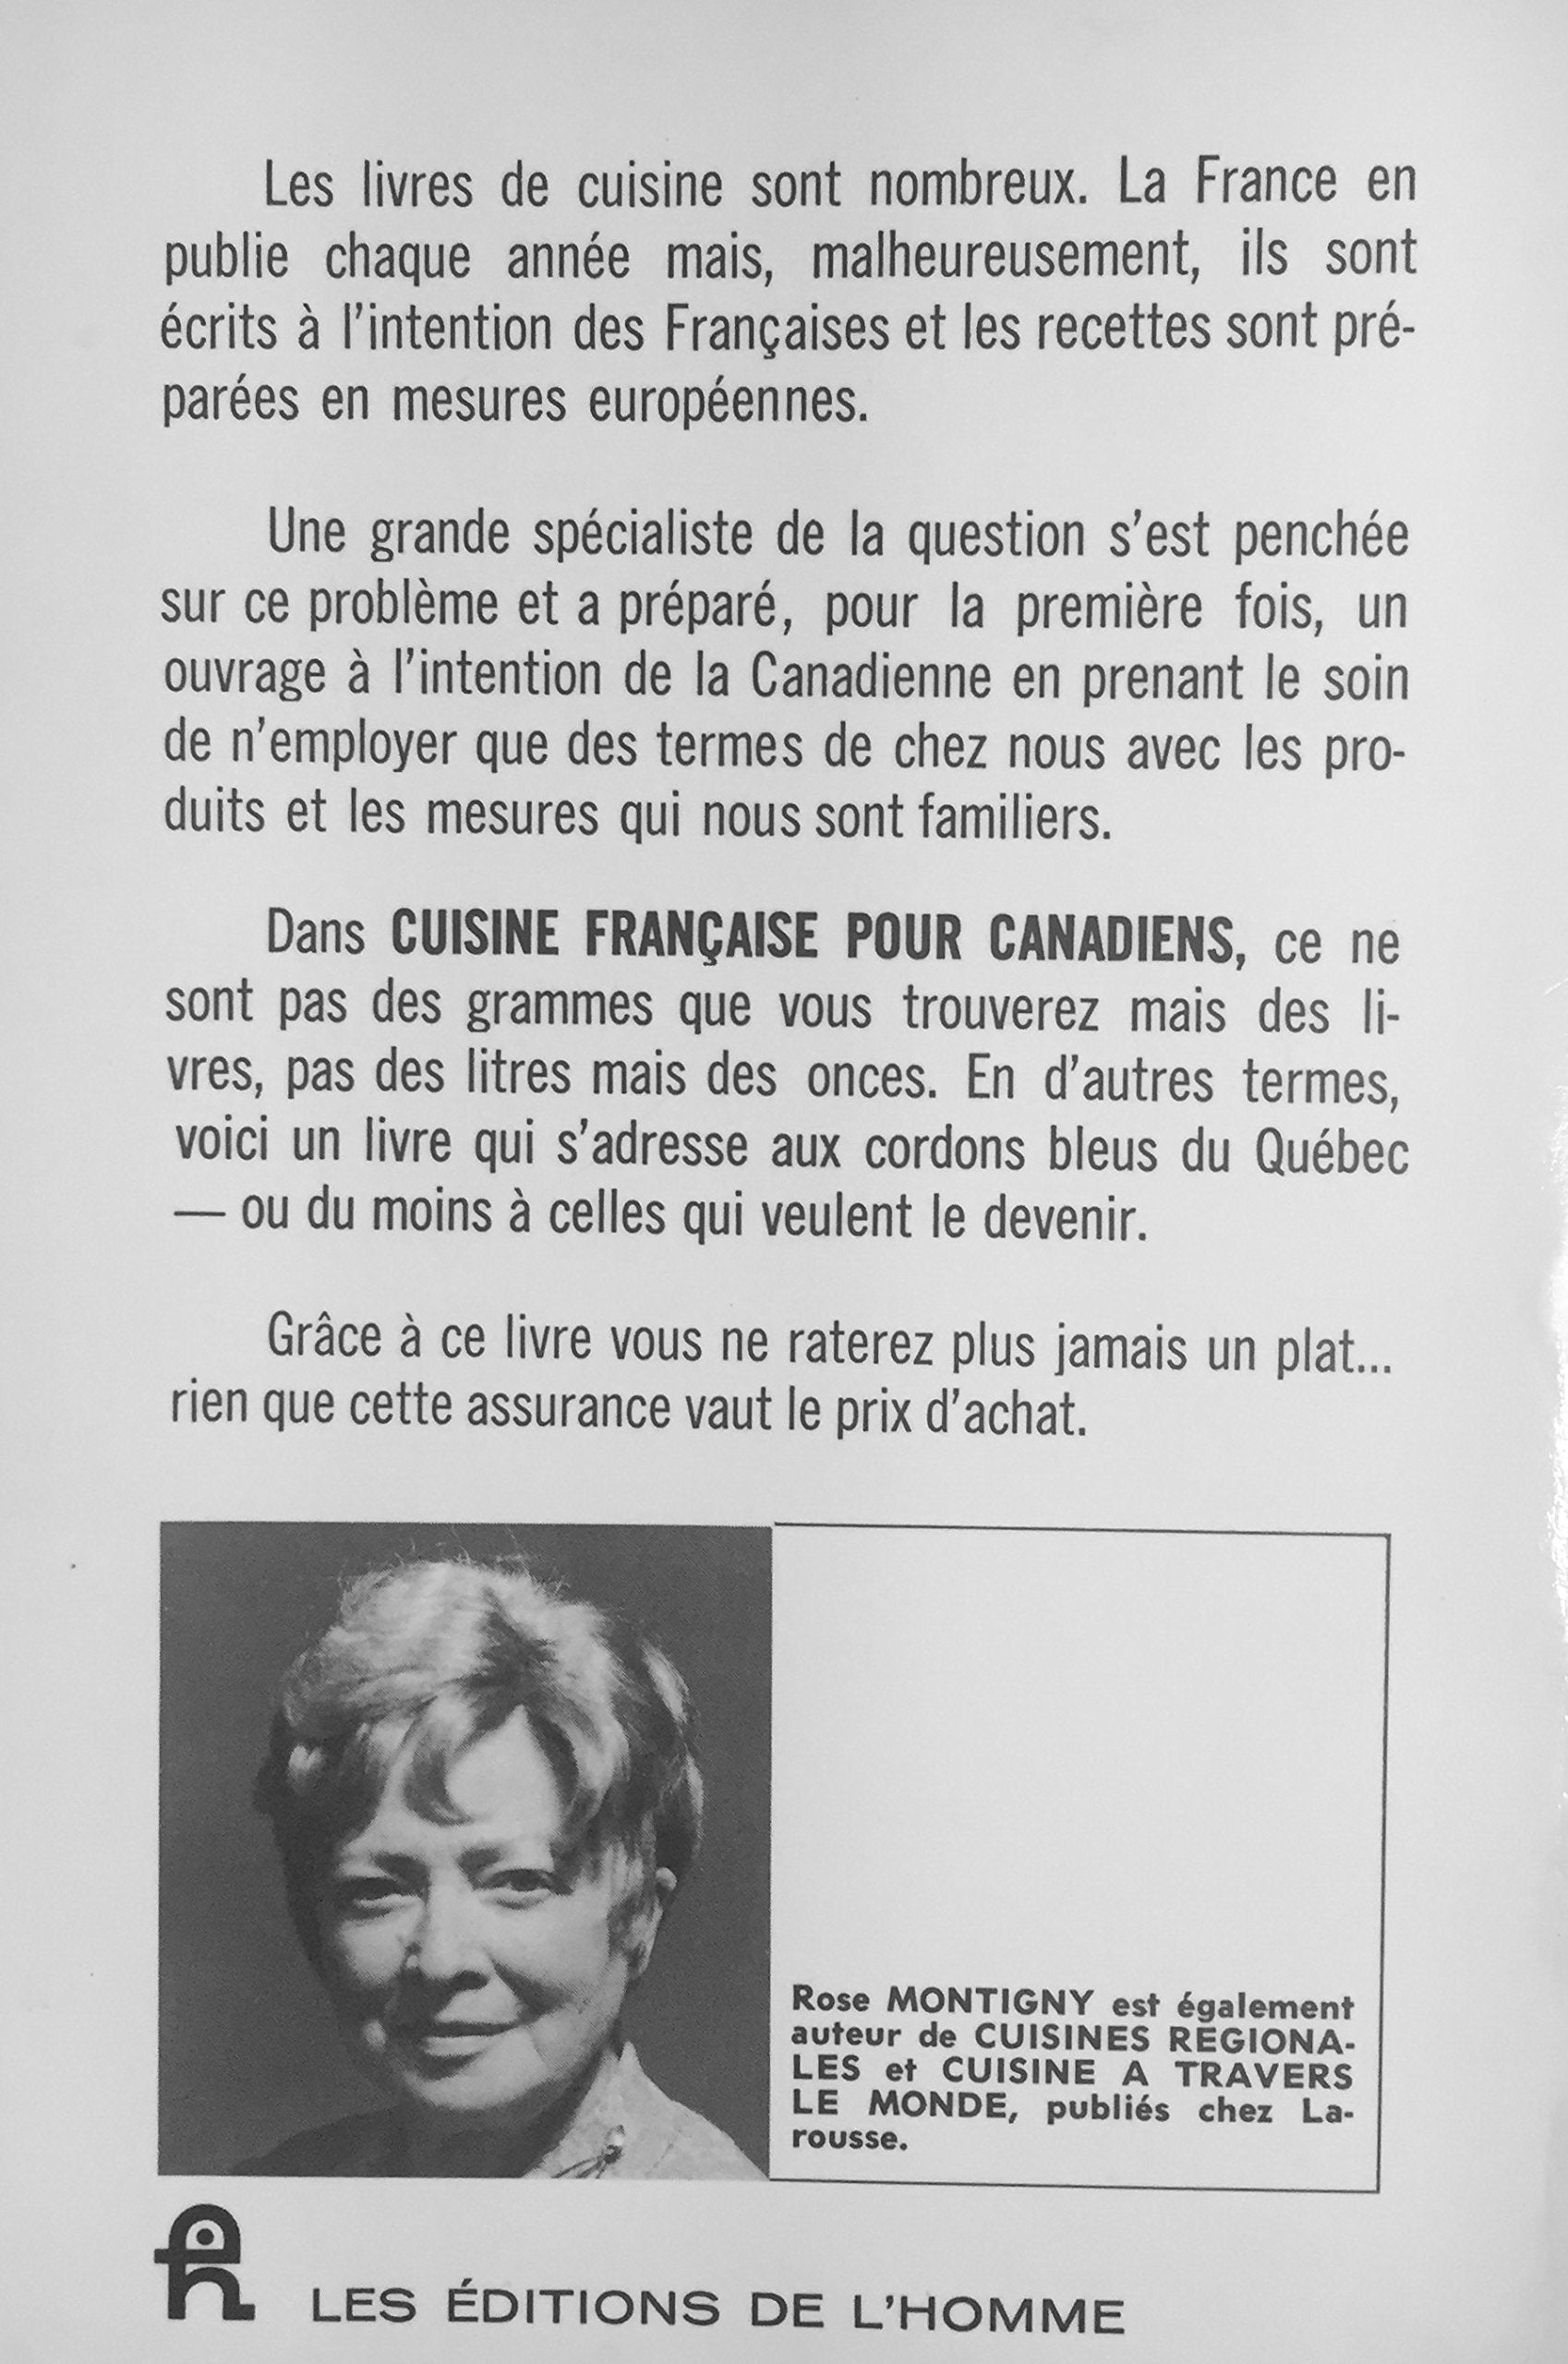 Cuisine française pour canadiens (Rose Montigny)